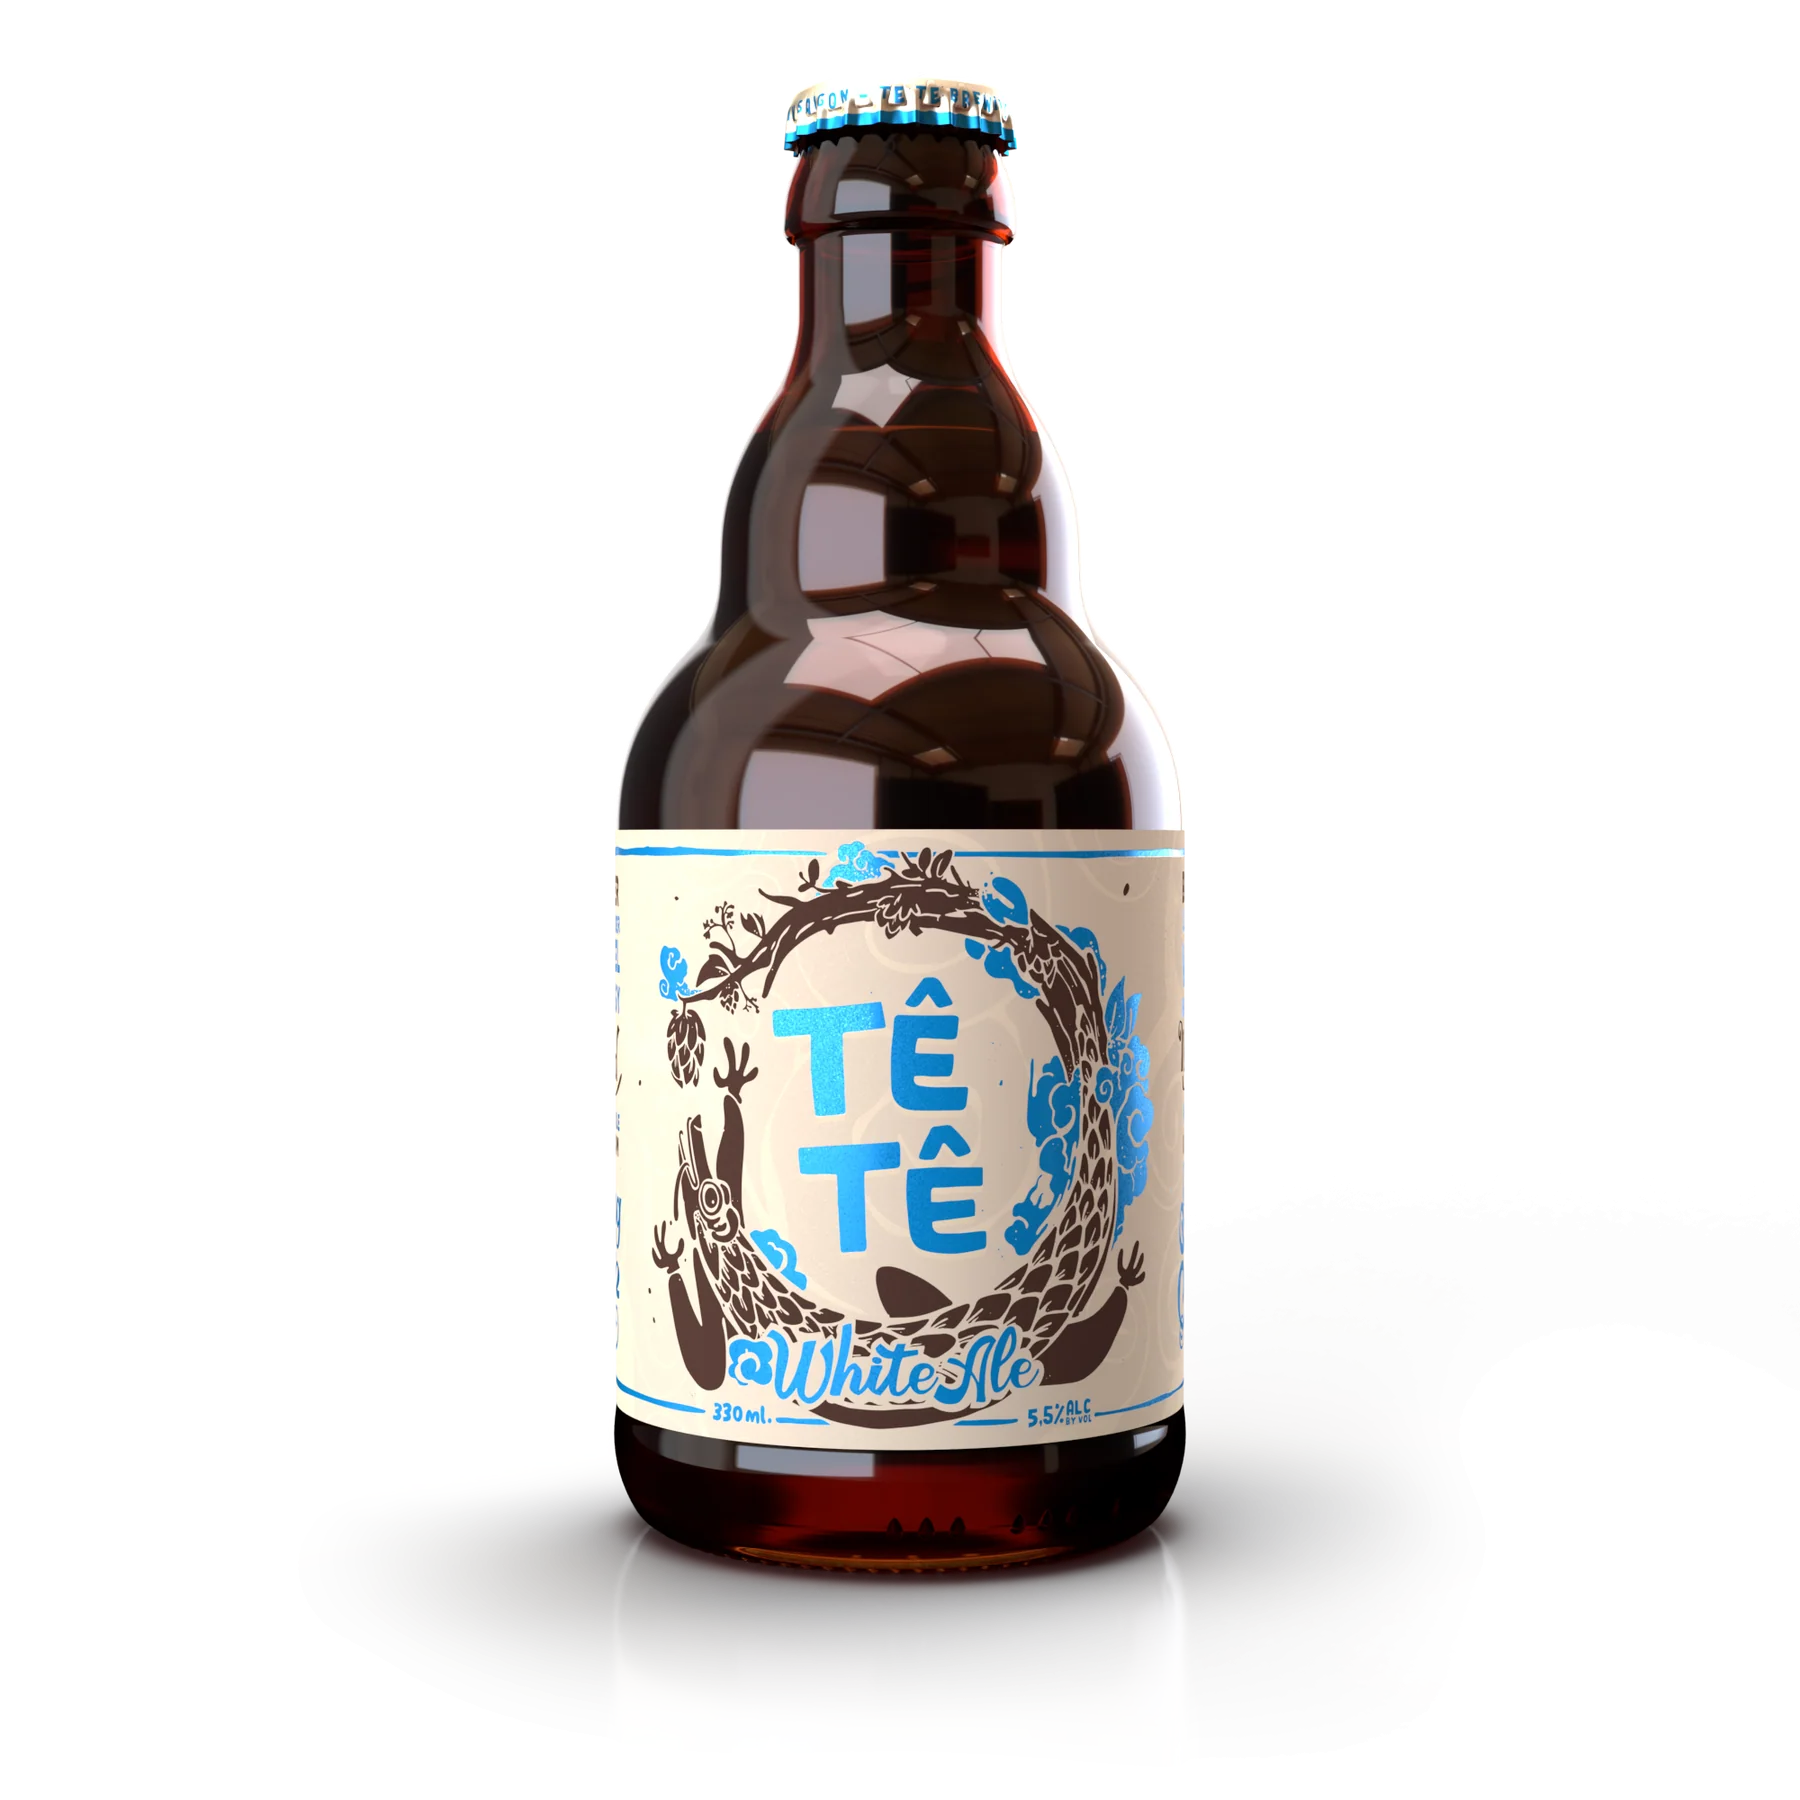 Tete 手工啤酒 White Ale